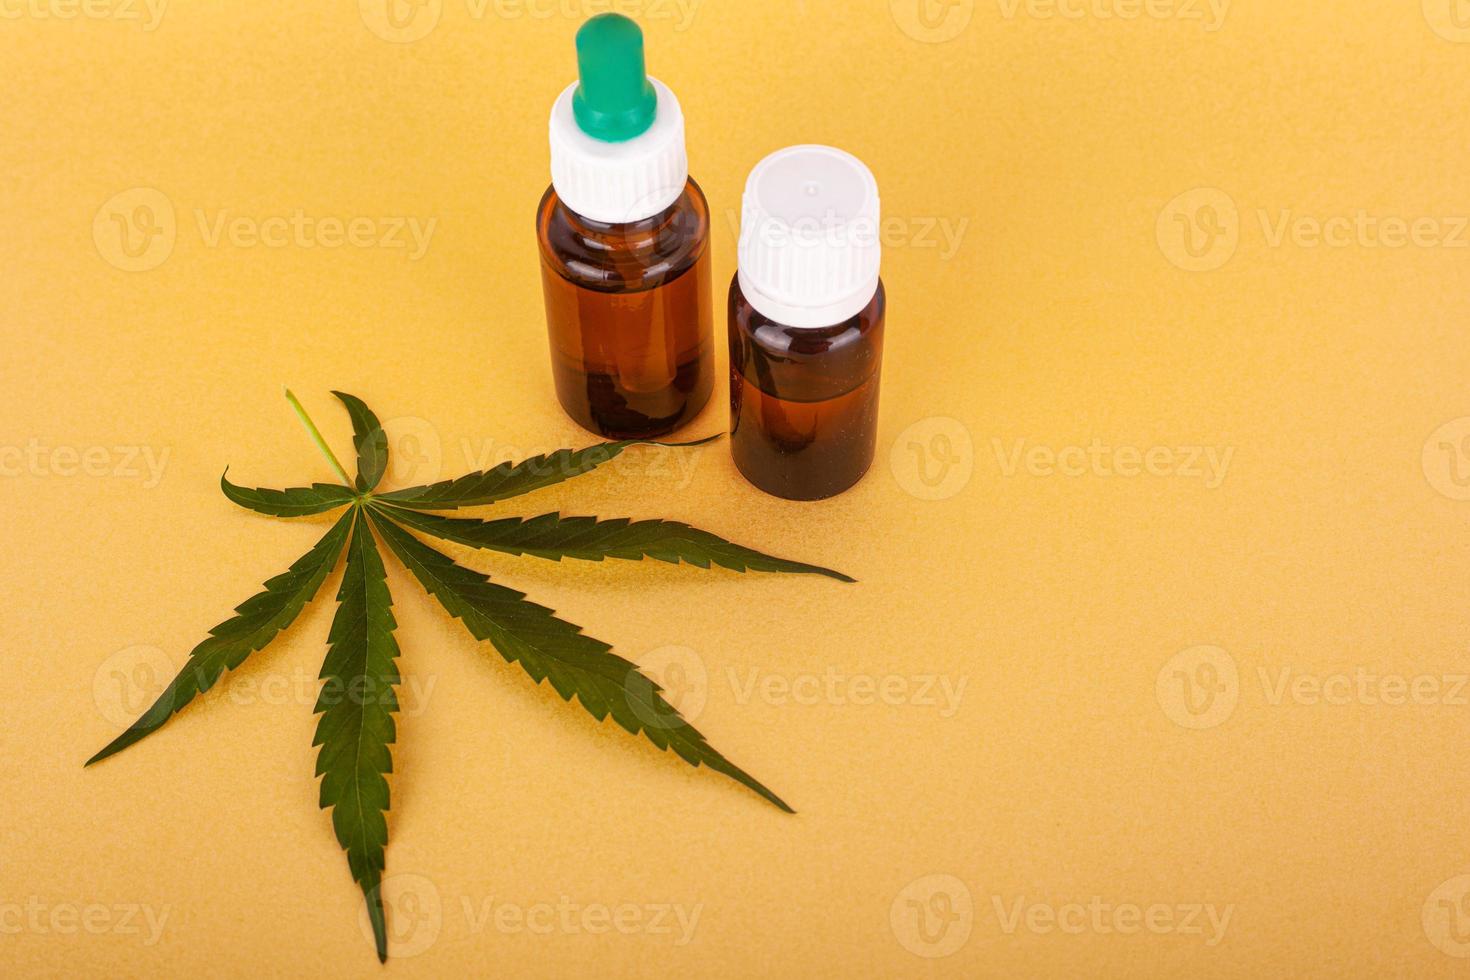 medicinaal cannabisextract met thc en cbd op gele achtergrond foto